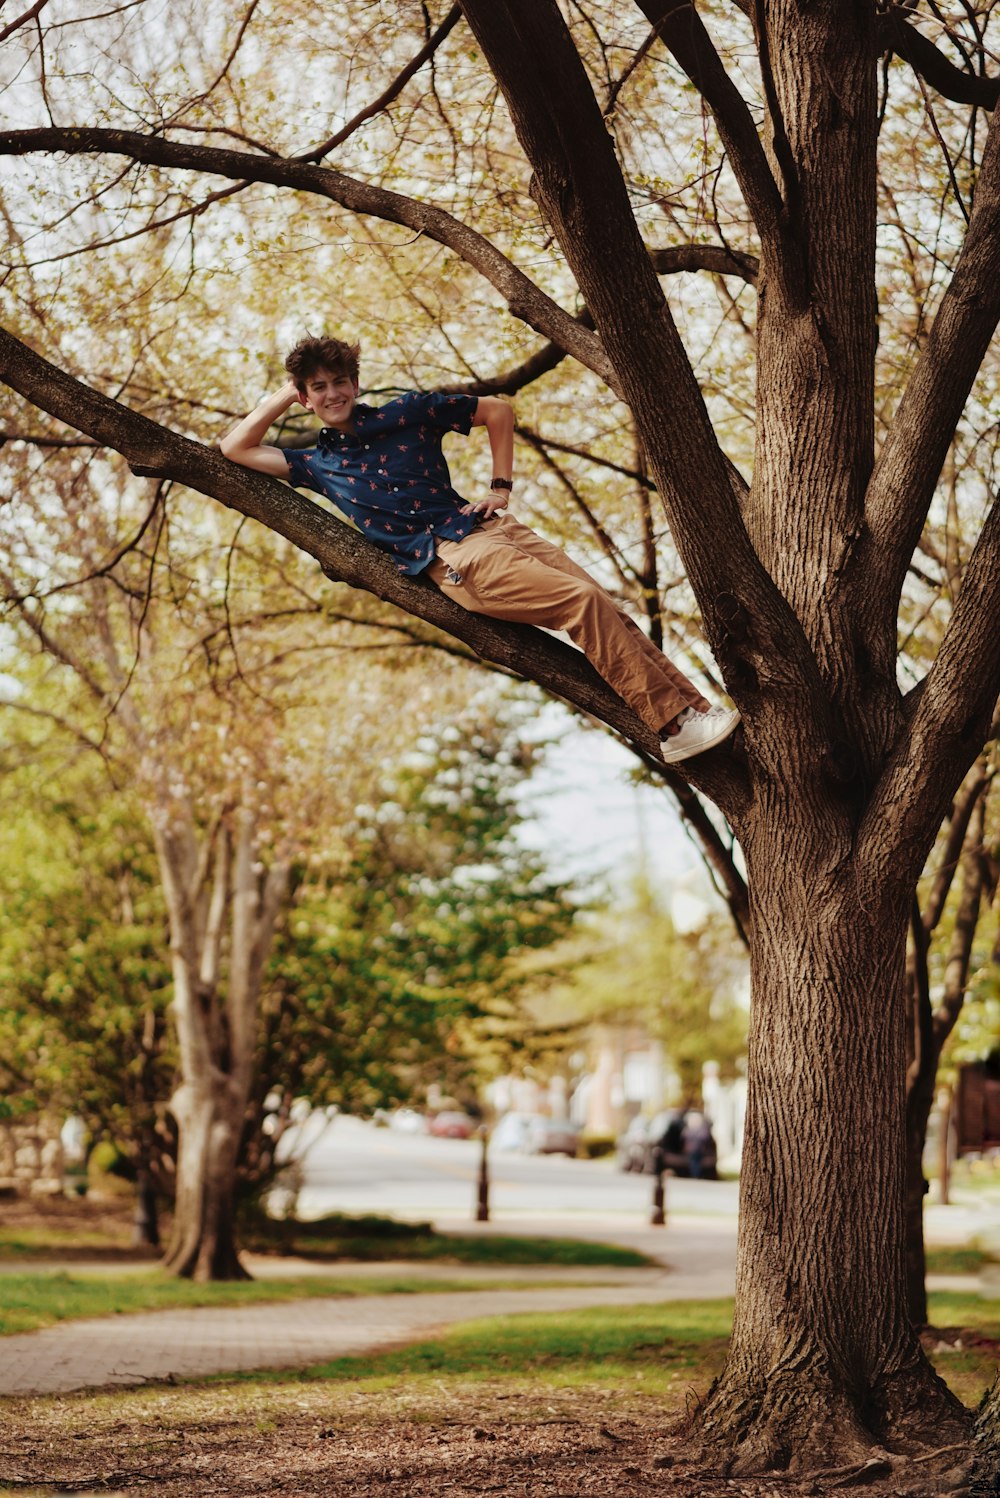 Un niño en un árbol